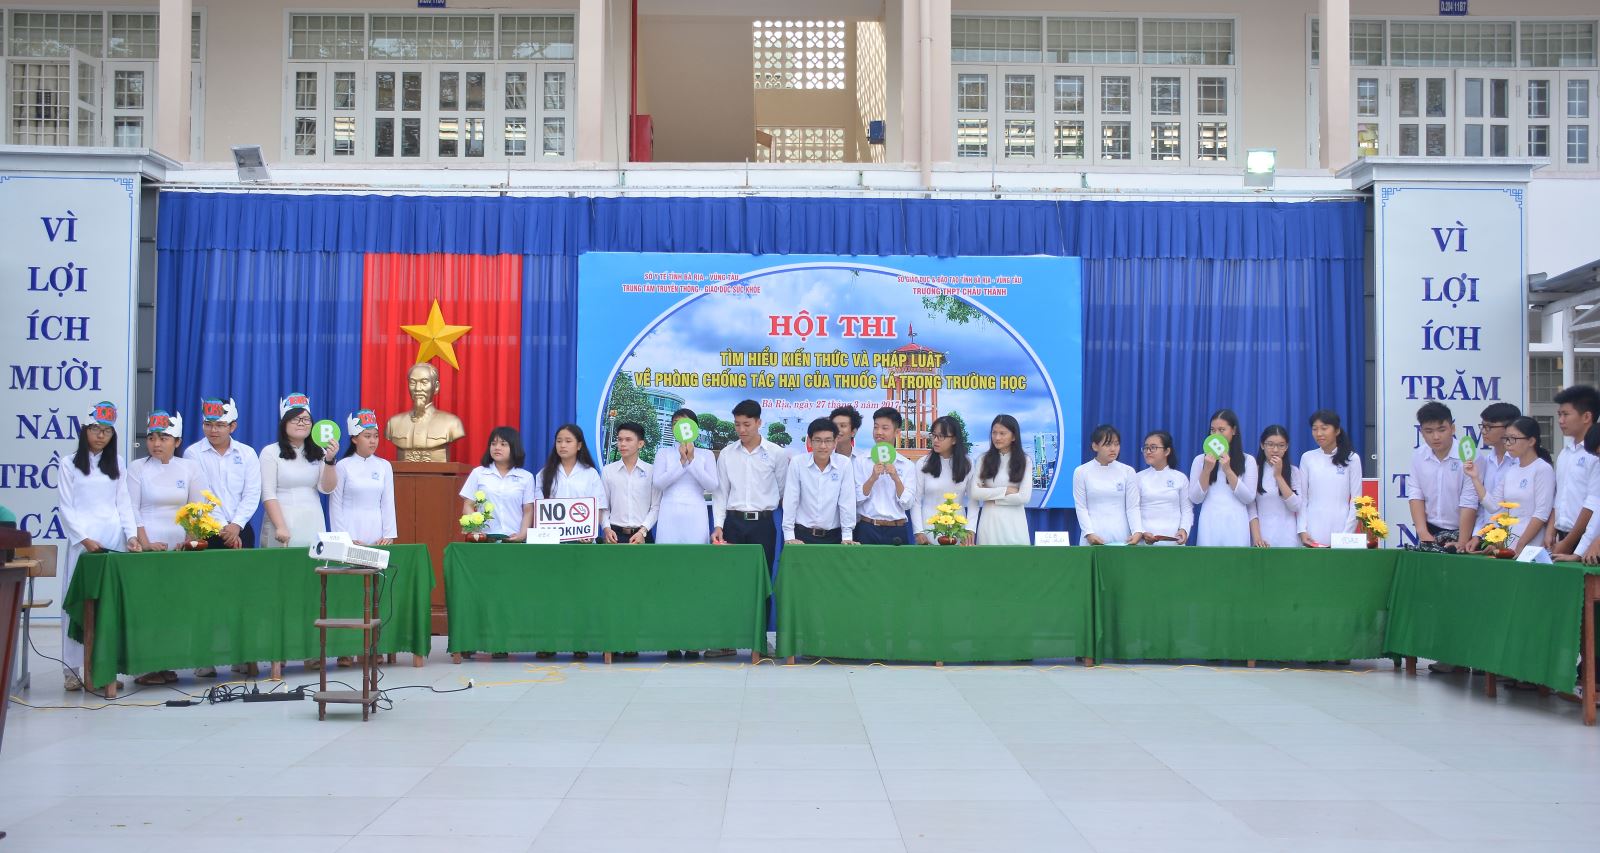 Học sinh trường THPT Châu Thành thi Kiến thức về PCTHTL.Ảnh: Thăng Thành 